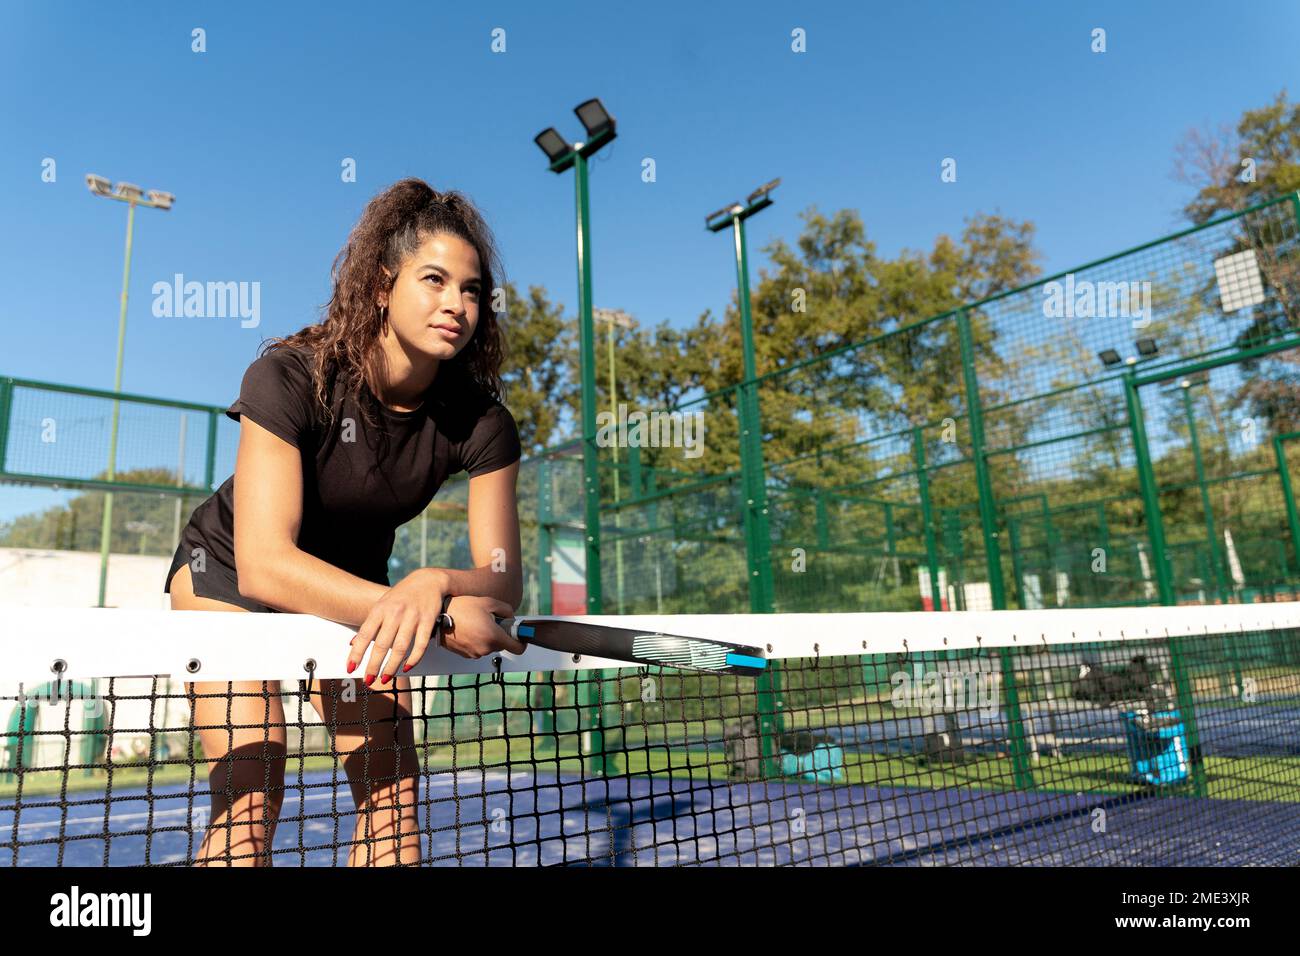 Jeune femme avec raquette penchée sur le filet de tennis Banque D'Images